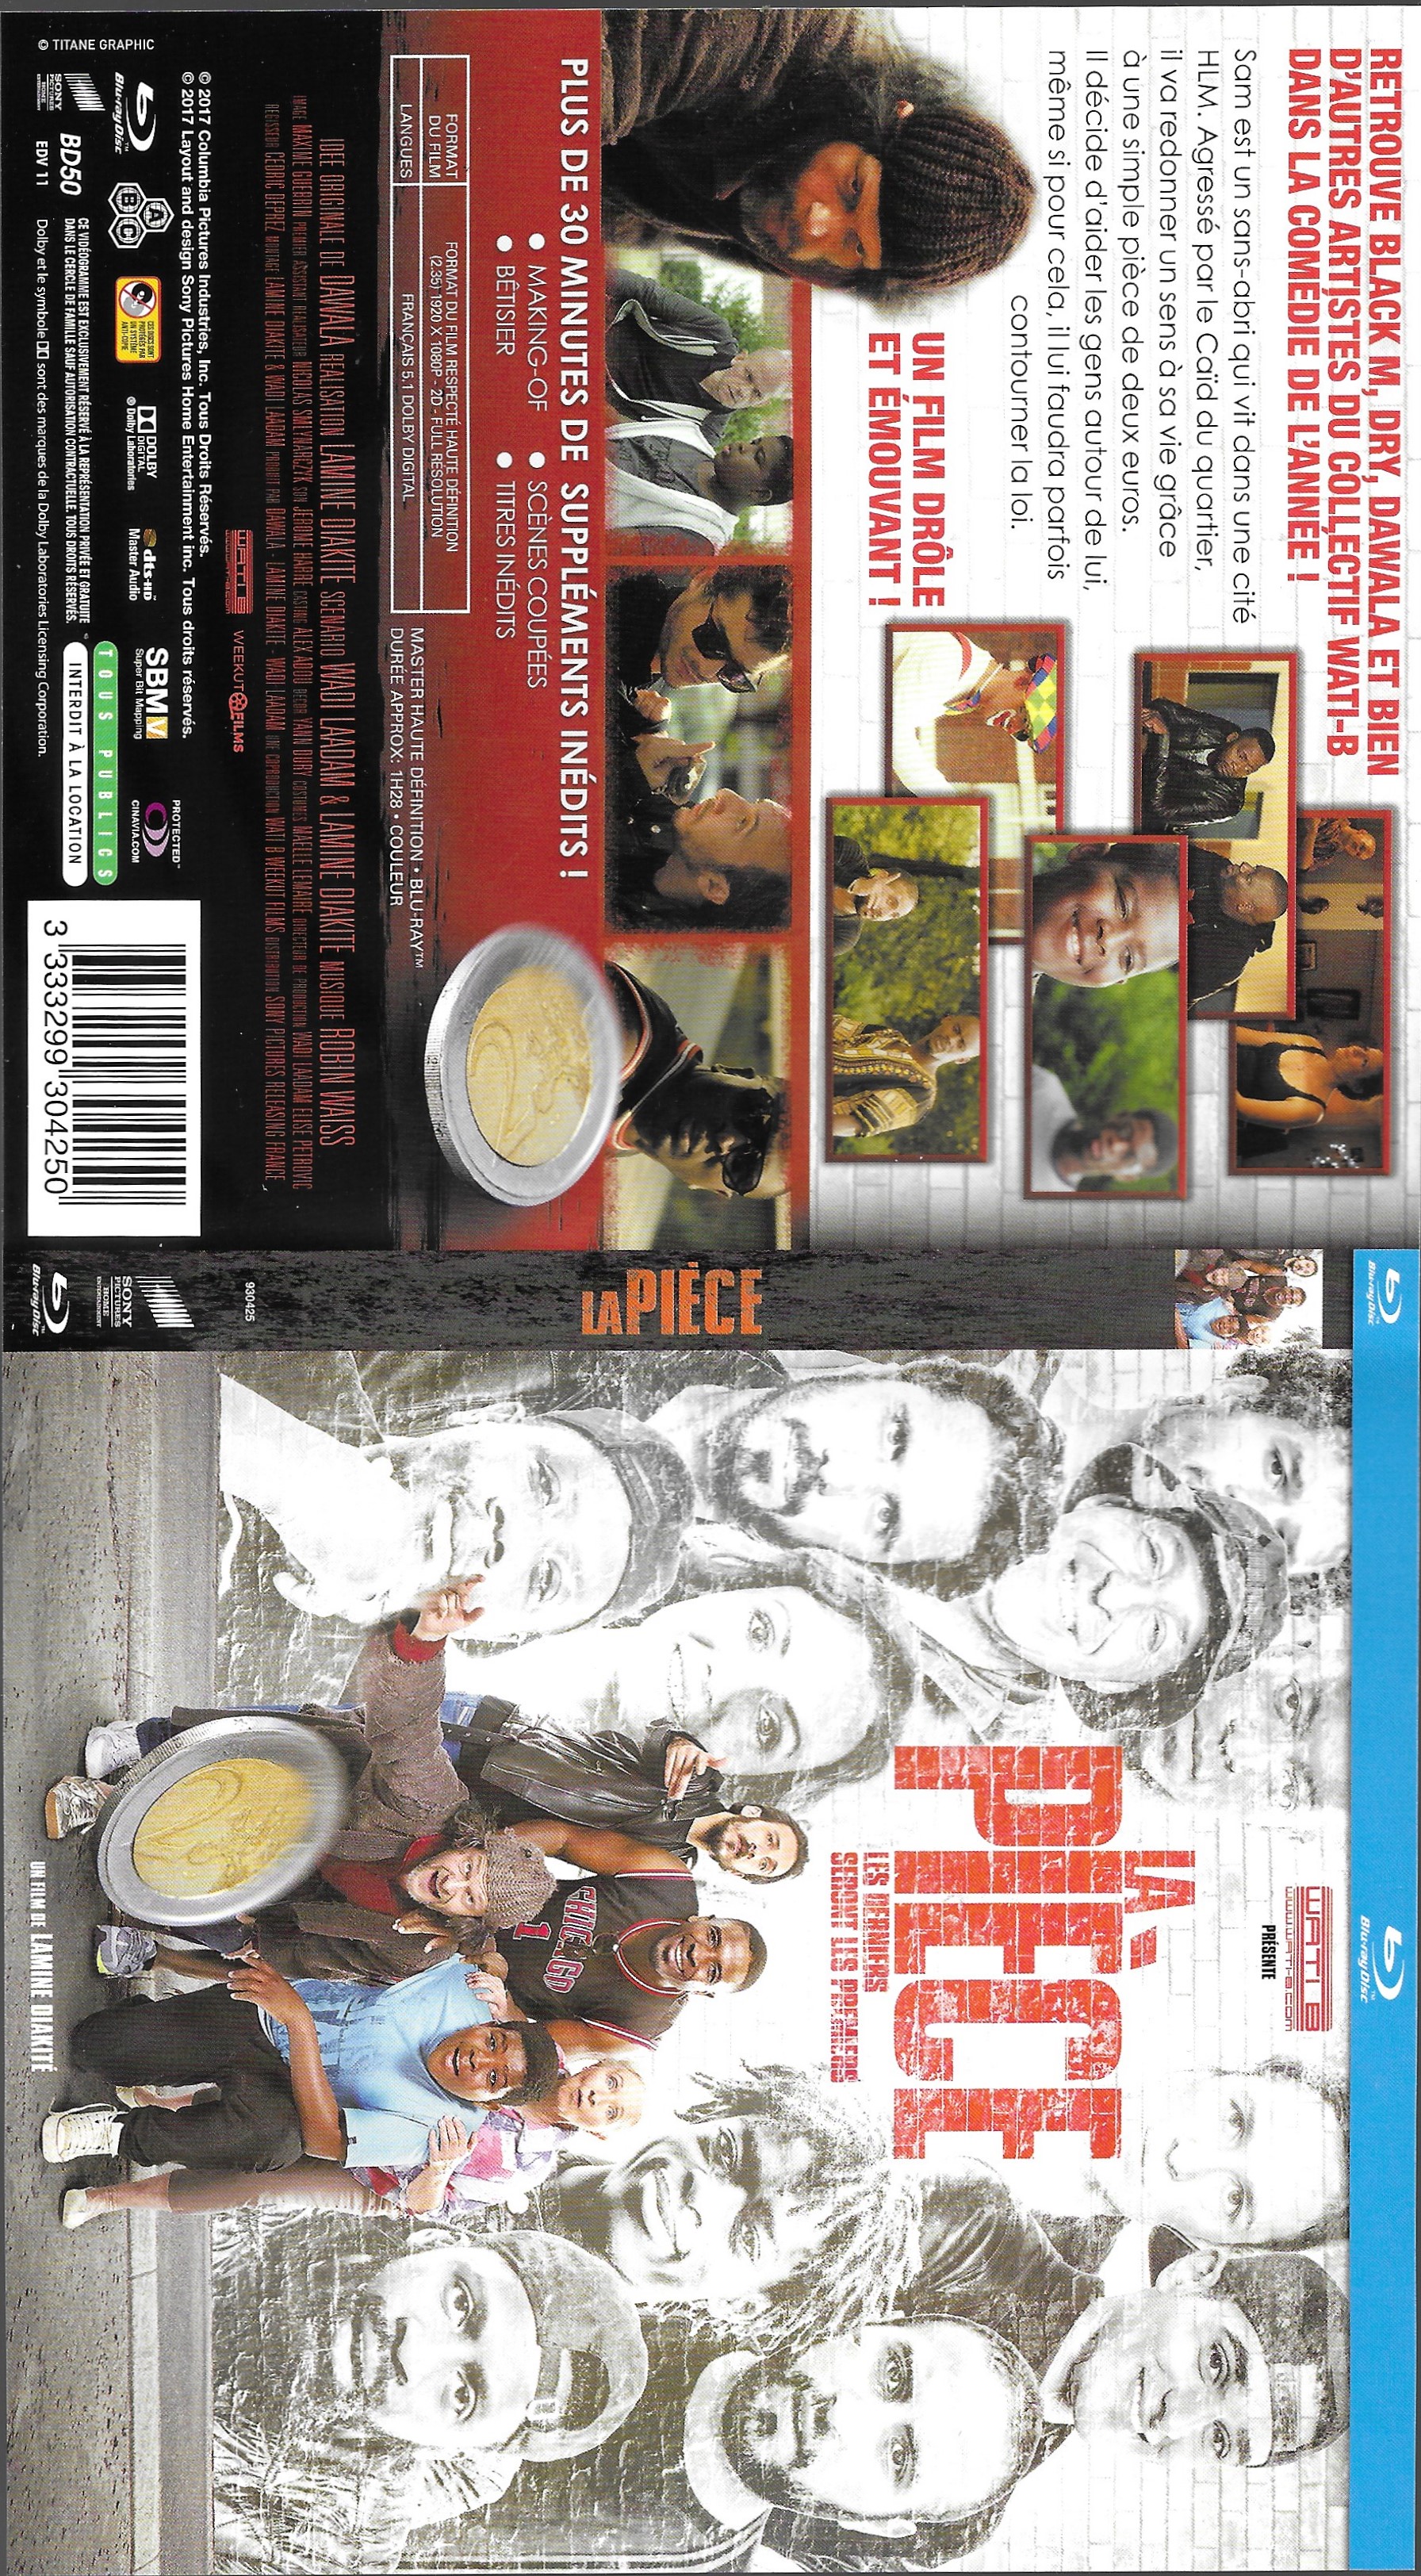 Jaquette DVD La pice (BLU-RAY)